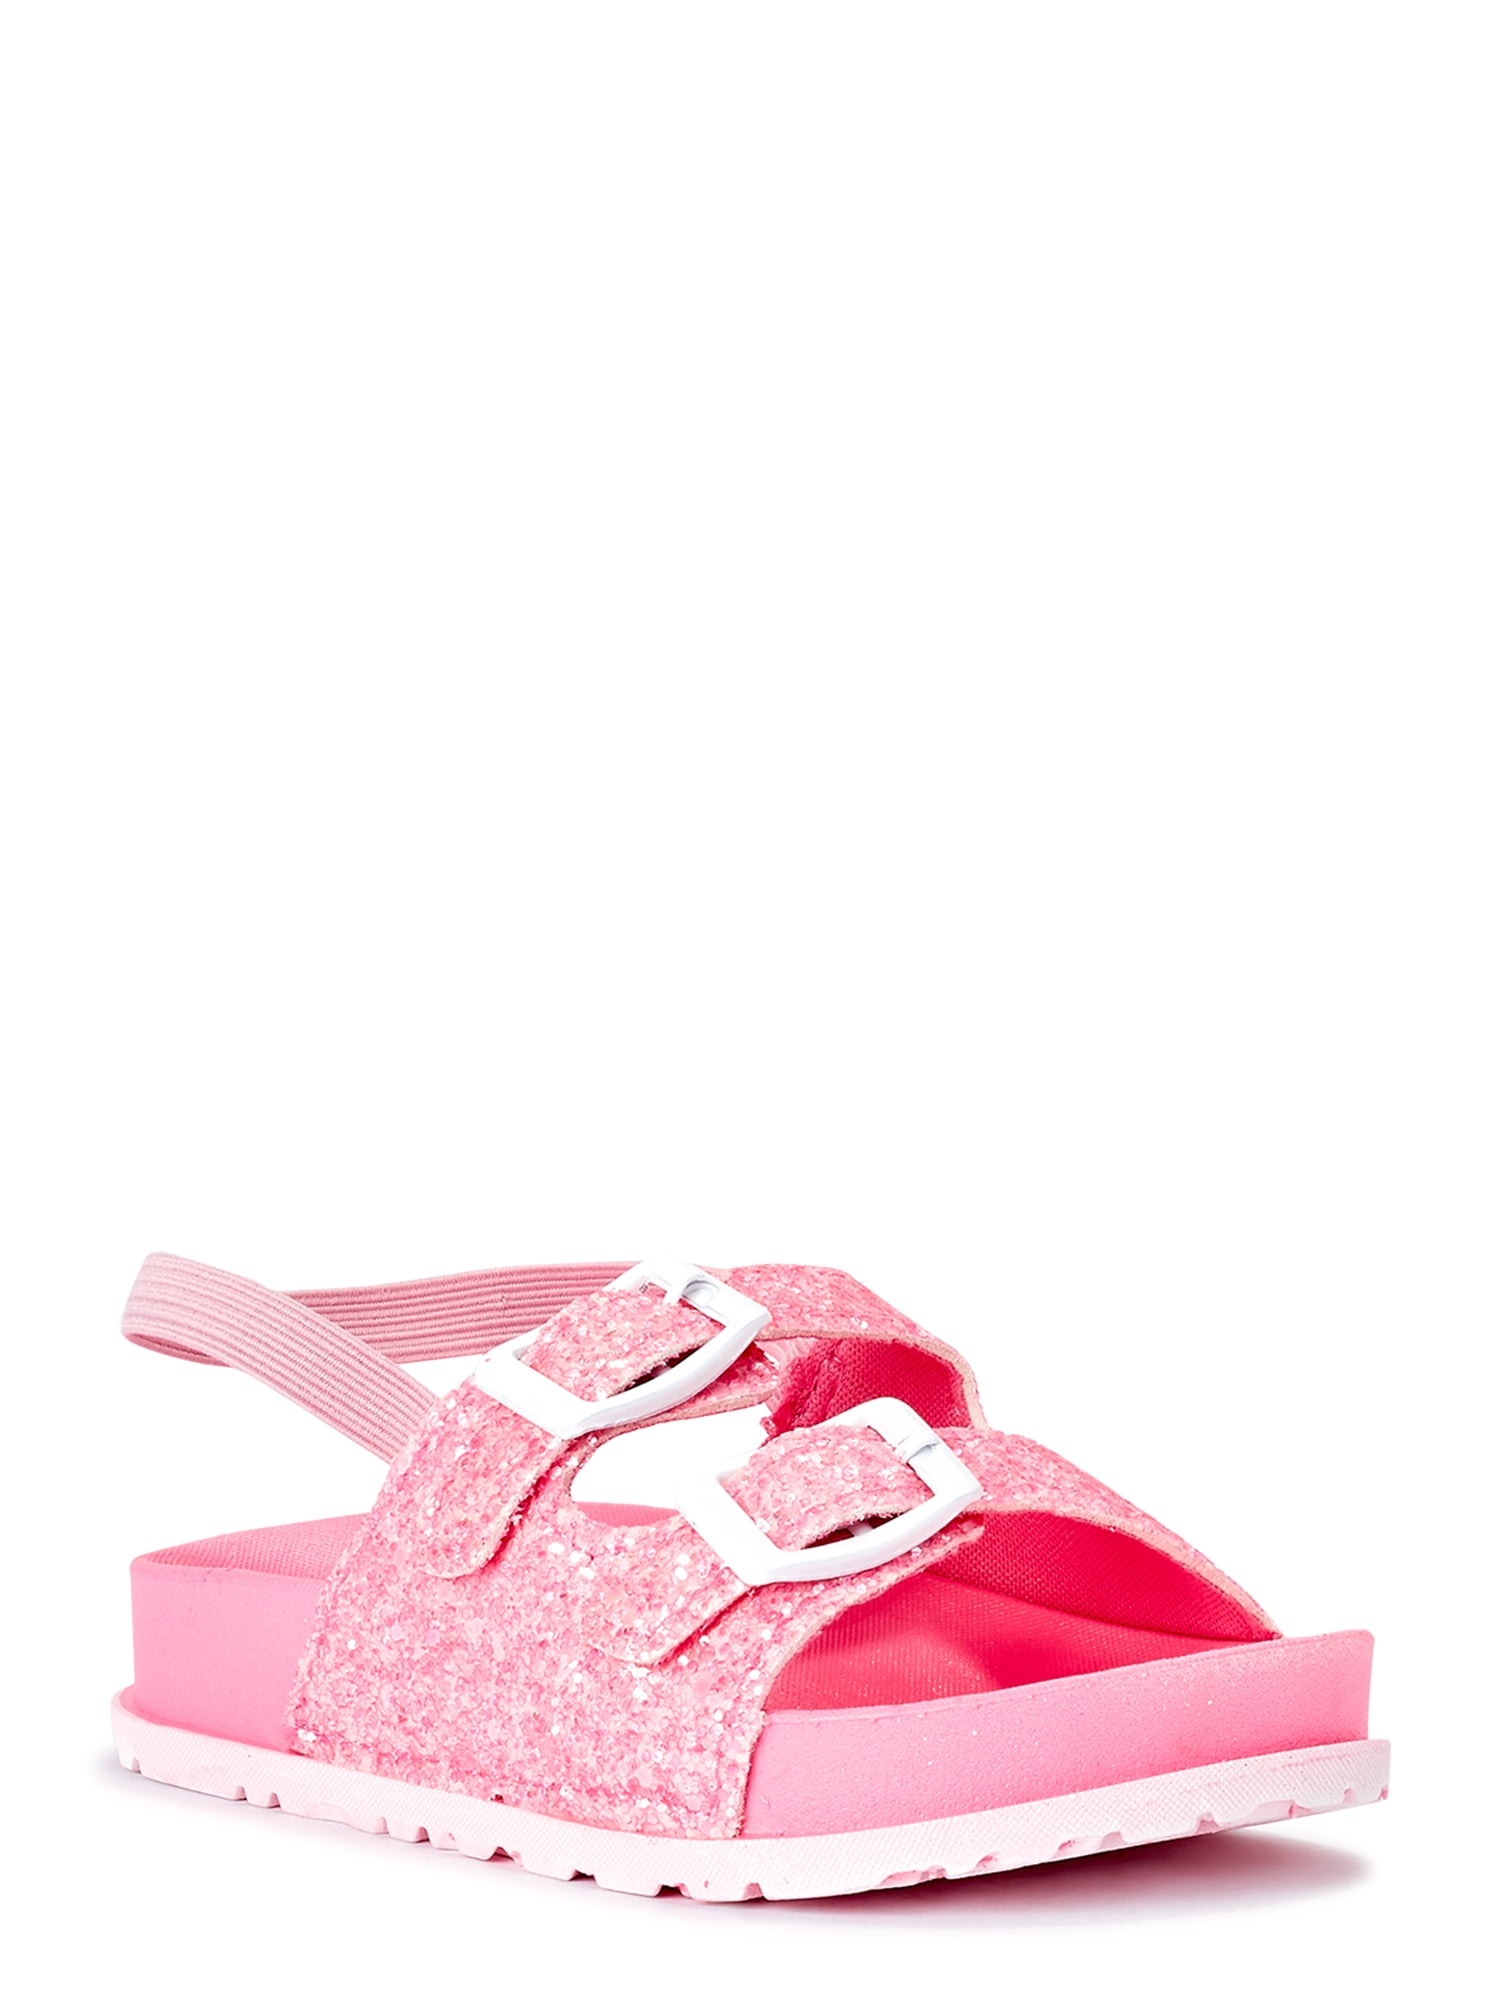 Steve Madden Little Girls Bartlet Flat Strappy Slide Sandal White Floral Size 6 